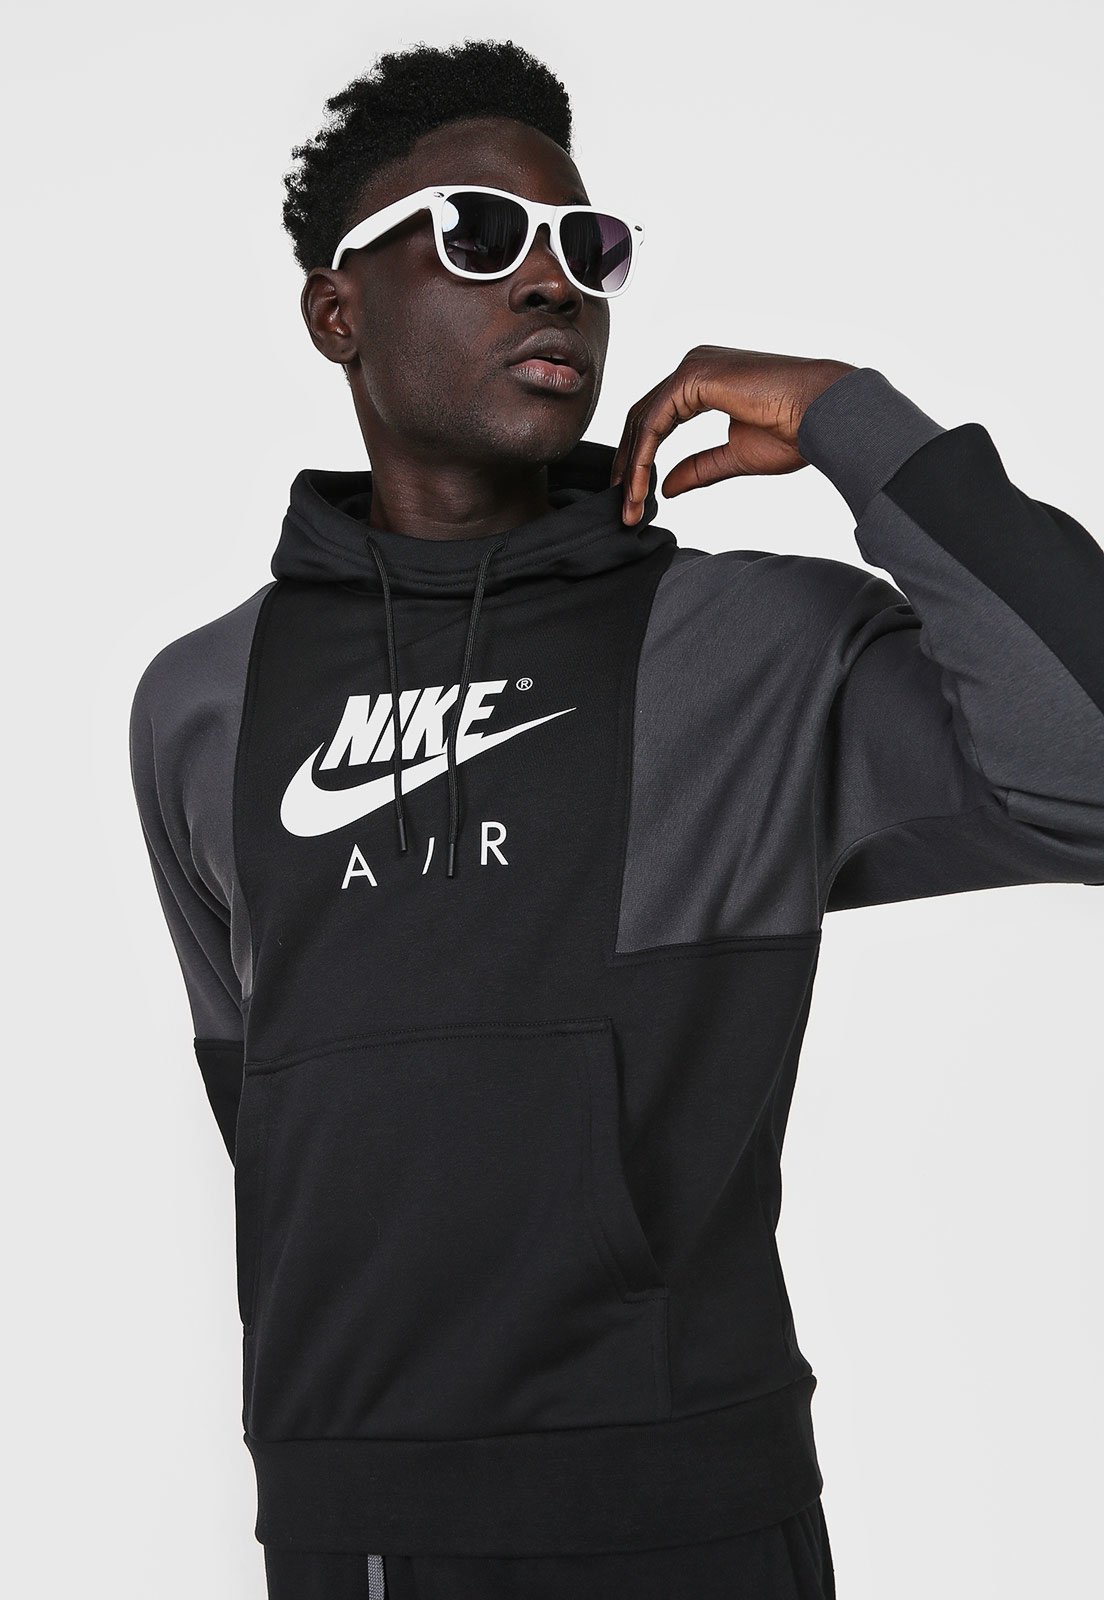 Blusa de Moletom Fechada Nike Yoga Jersey Cr Preta - Compre Agora